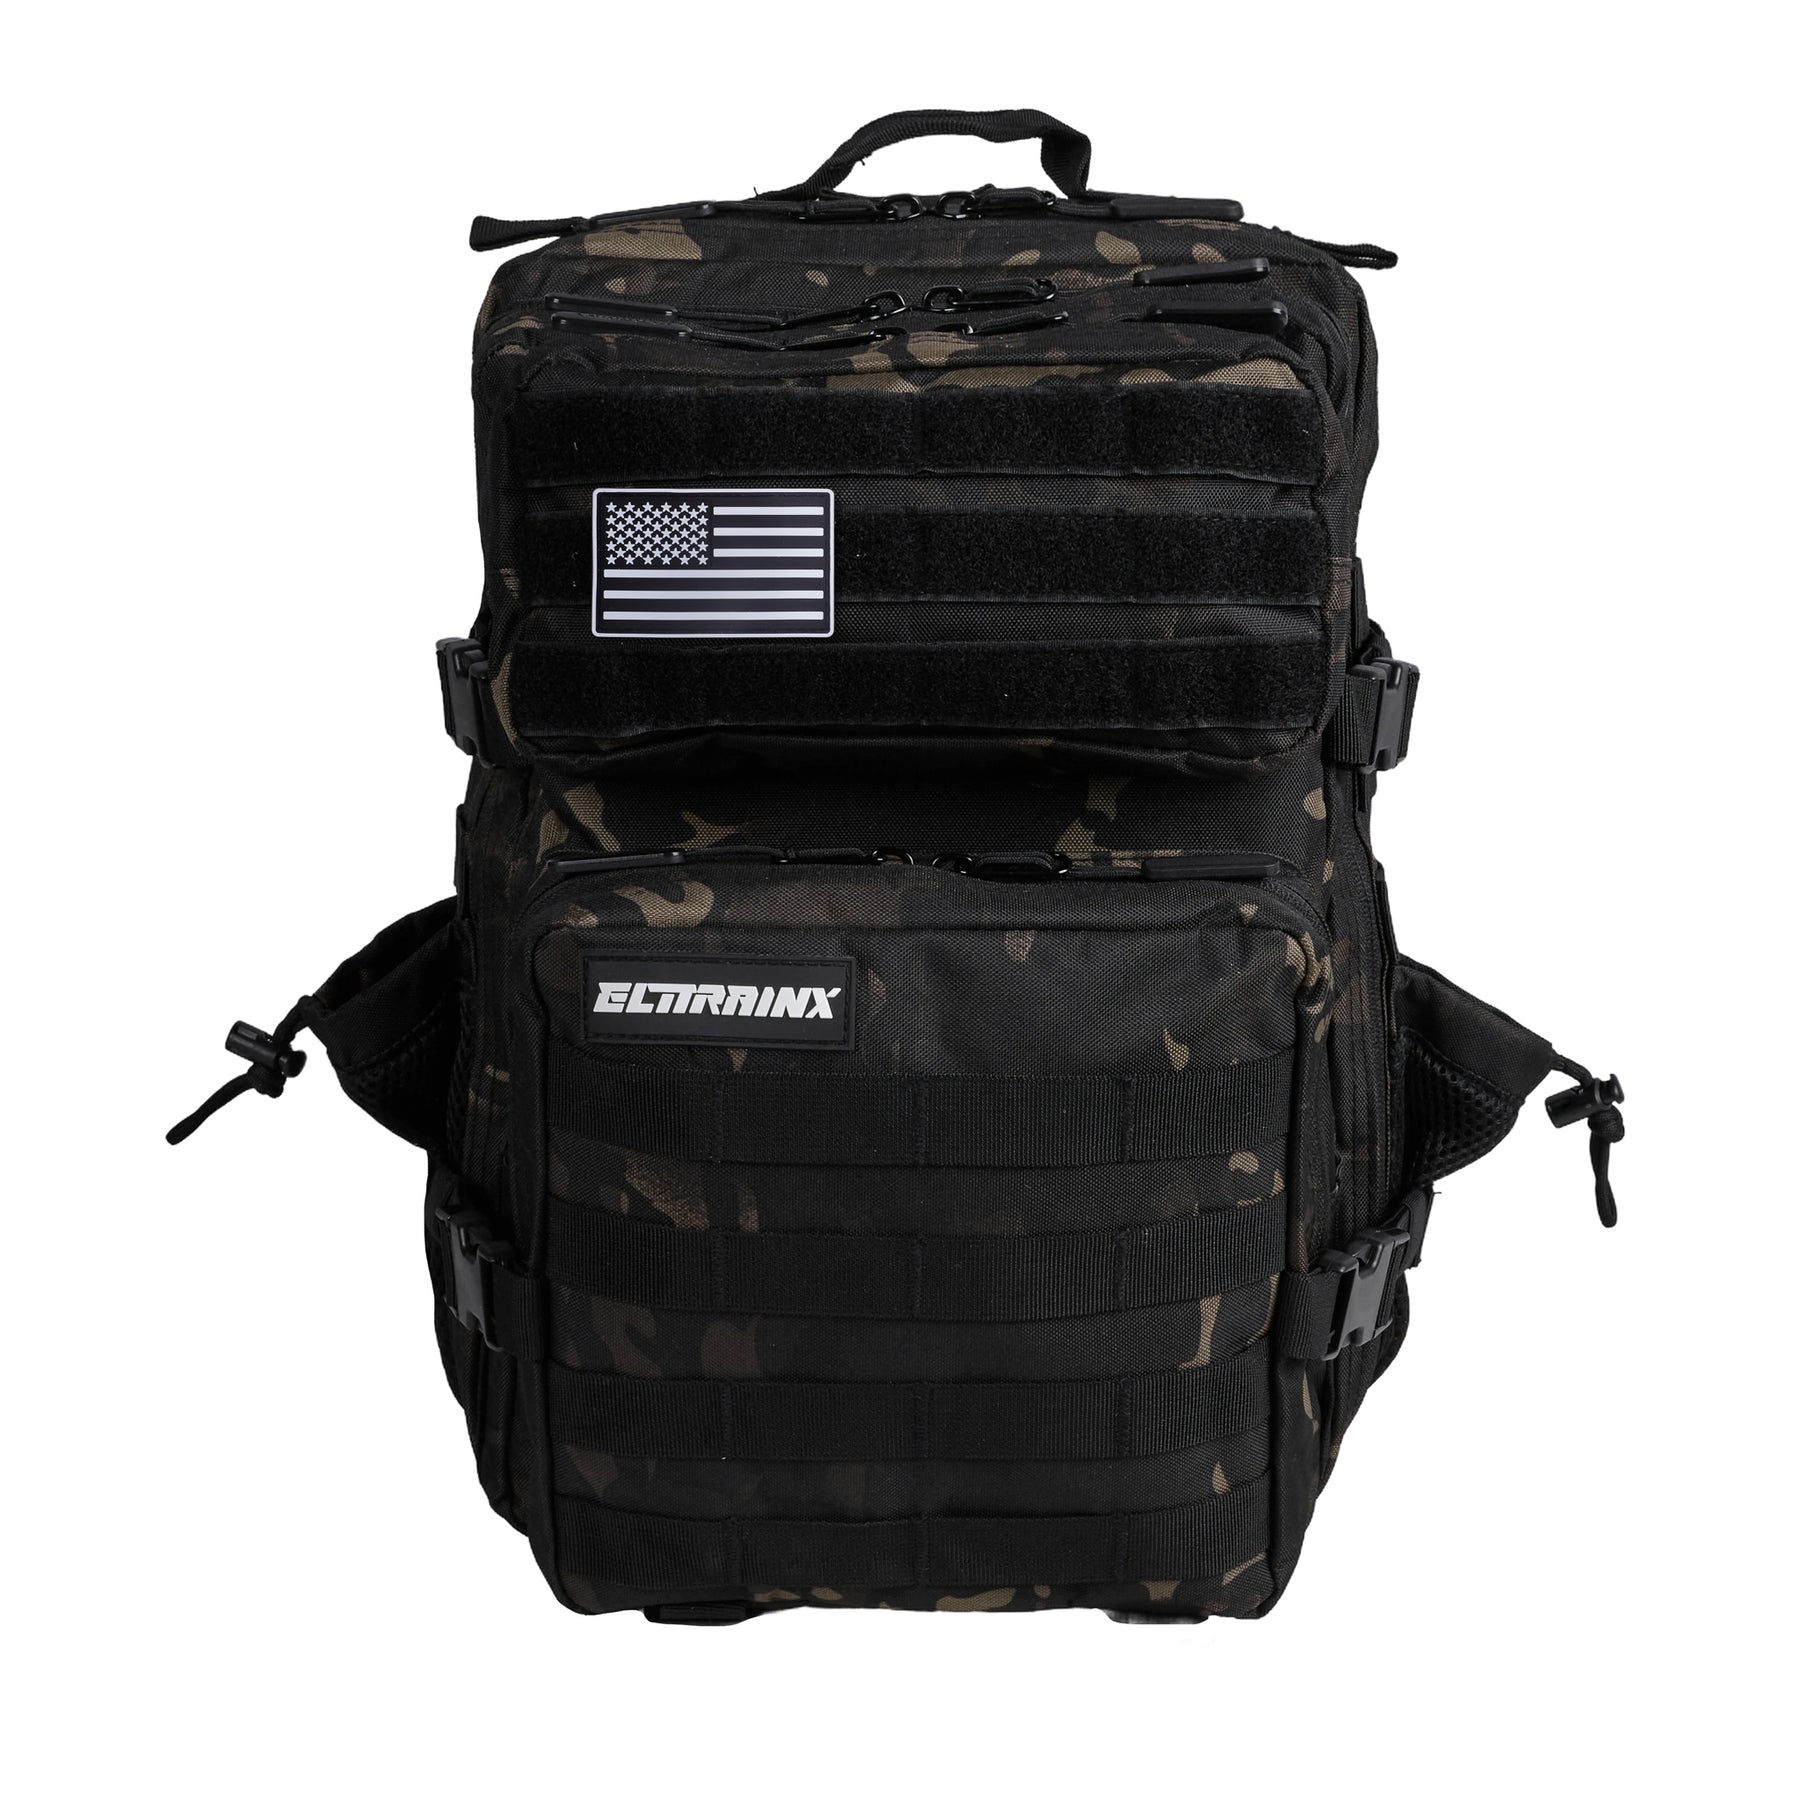 Reiserucksack mit Reißverschlusstaschen – Sportrucksack – Elitex Training